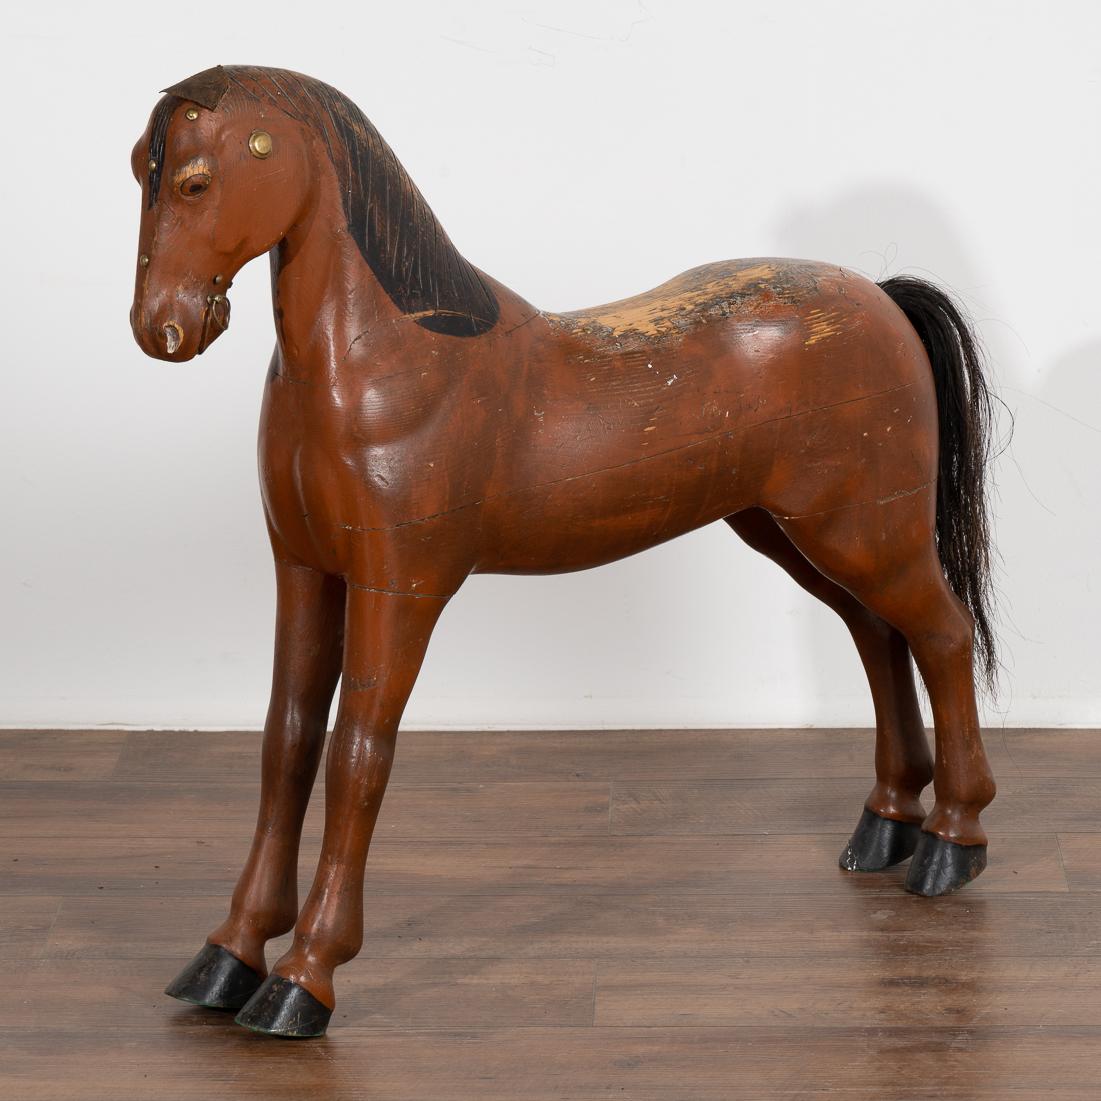 C'est l'aspect très usé de ce cheval peint et sculpté qui en fait tout l'attrait. 
La peinture brune a été usée le long du dos, tandis que les oreilles en cuir en lambeaux et la crinière sculptée et peinte en noir témoignent d'une époque plus